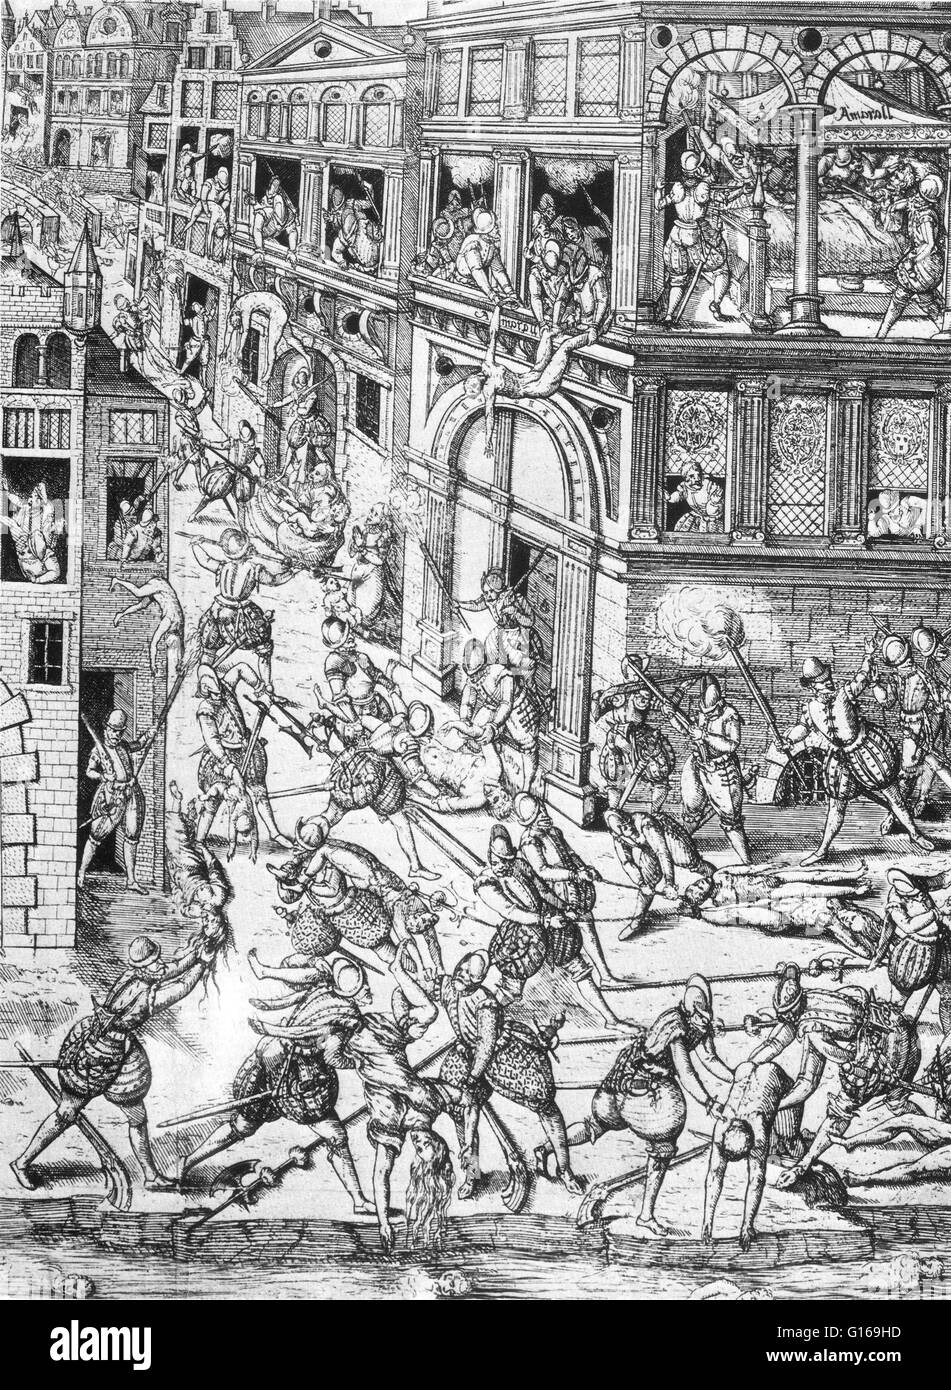 Der St.-Bartholomäus Massaker im Jahr 1572 richtete eine Zielgruppe der Morde, gefolgt von einer Welle von Ausschreitungen und römisch-katholisch, sich sowohl gegen die Hugenotten, während der französischen Religionskriege. Traditionell geglaubt gewesen zu sein b angestiftet Stockfoto